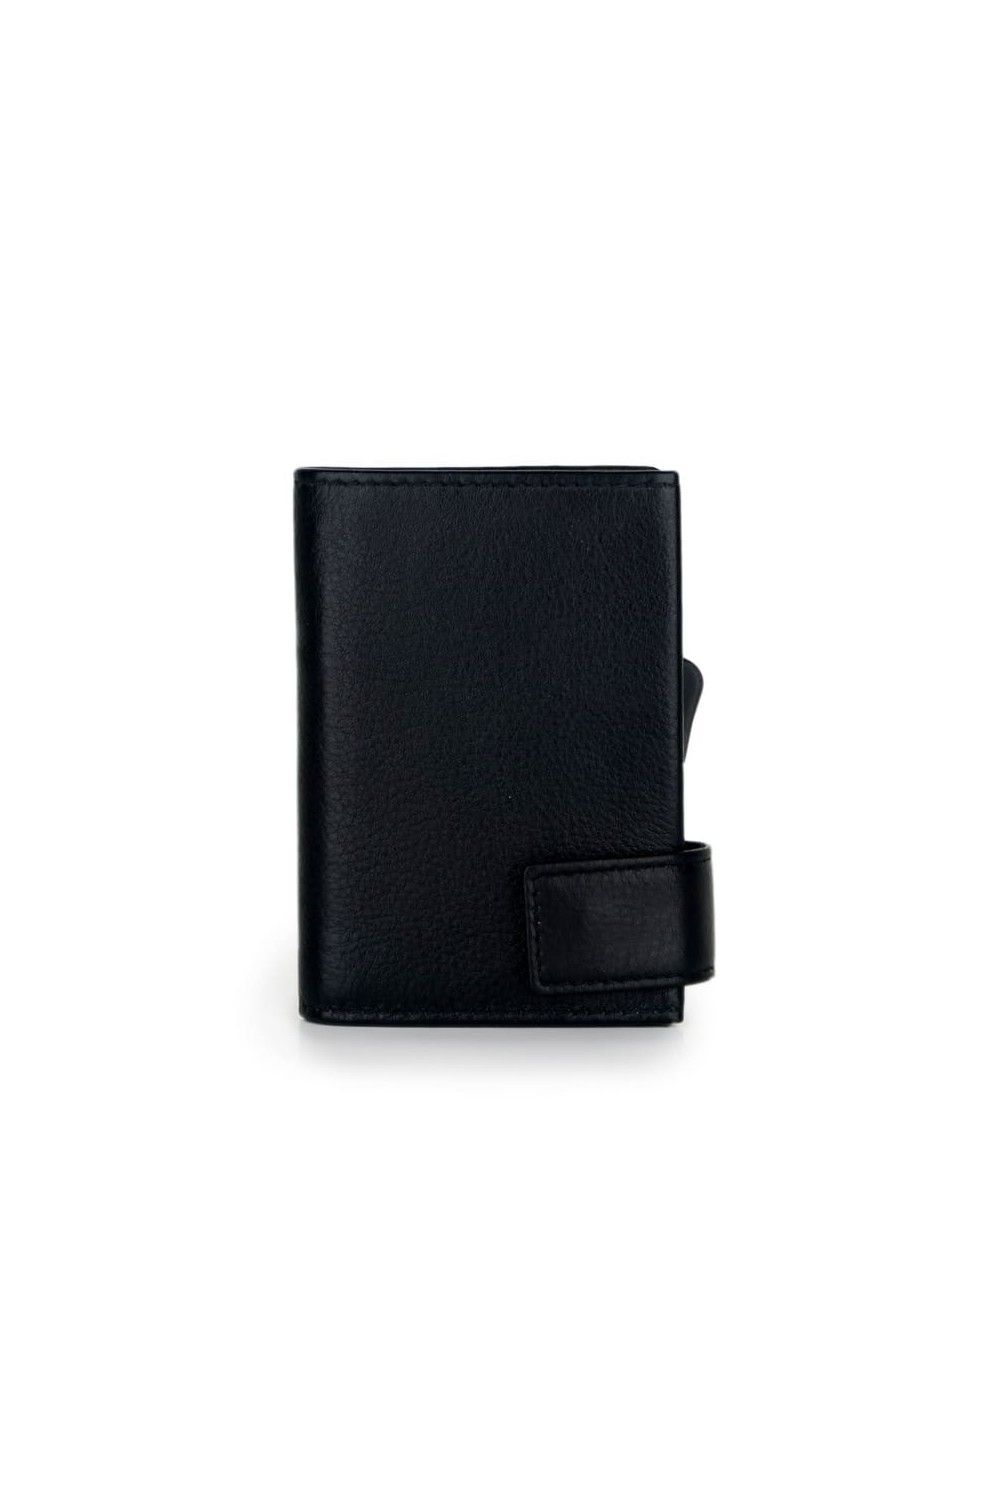 Porte-cartes SecWal DK Leather noir